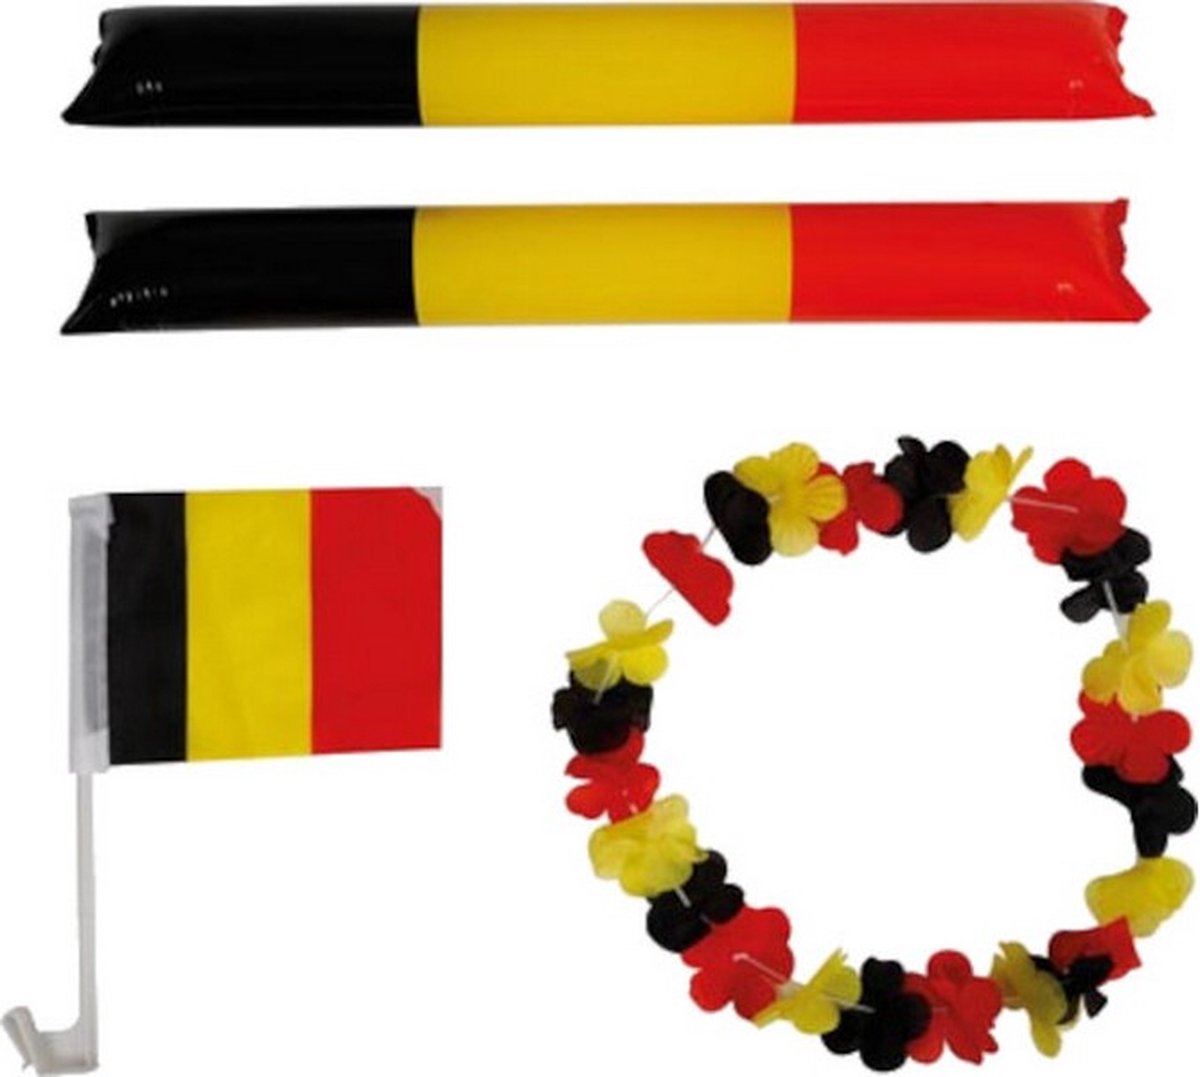 supporterskit Belgi√É¬´ polyester zwart/geel/rood 4-delig